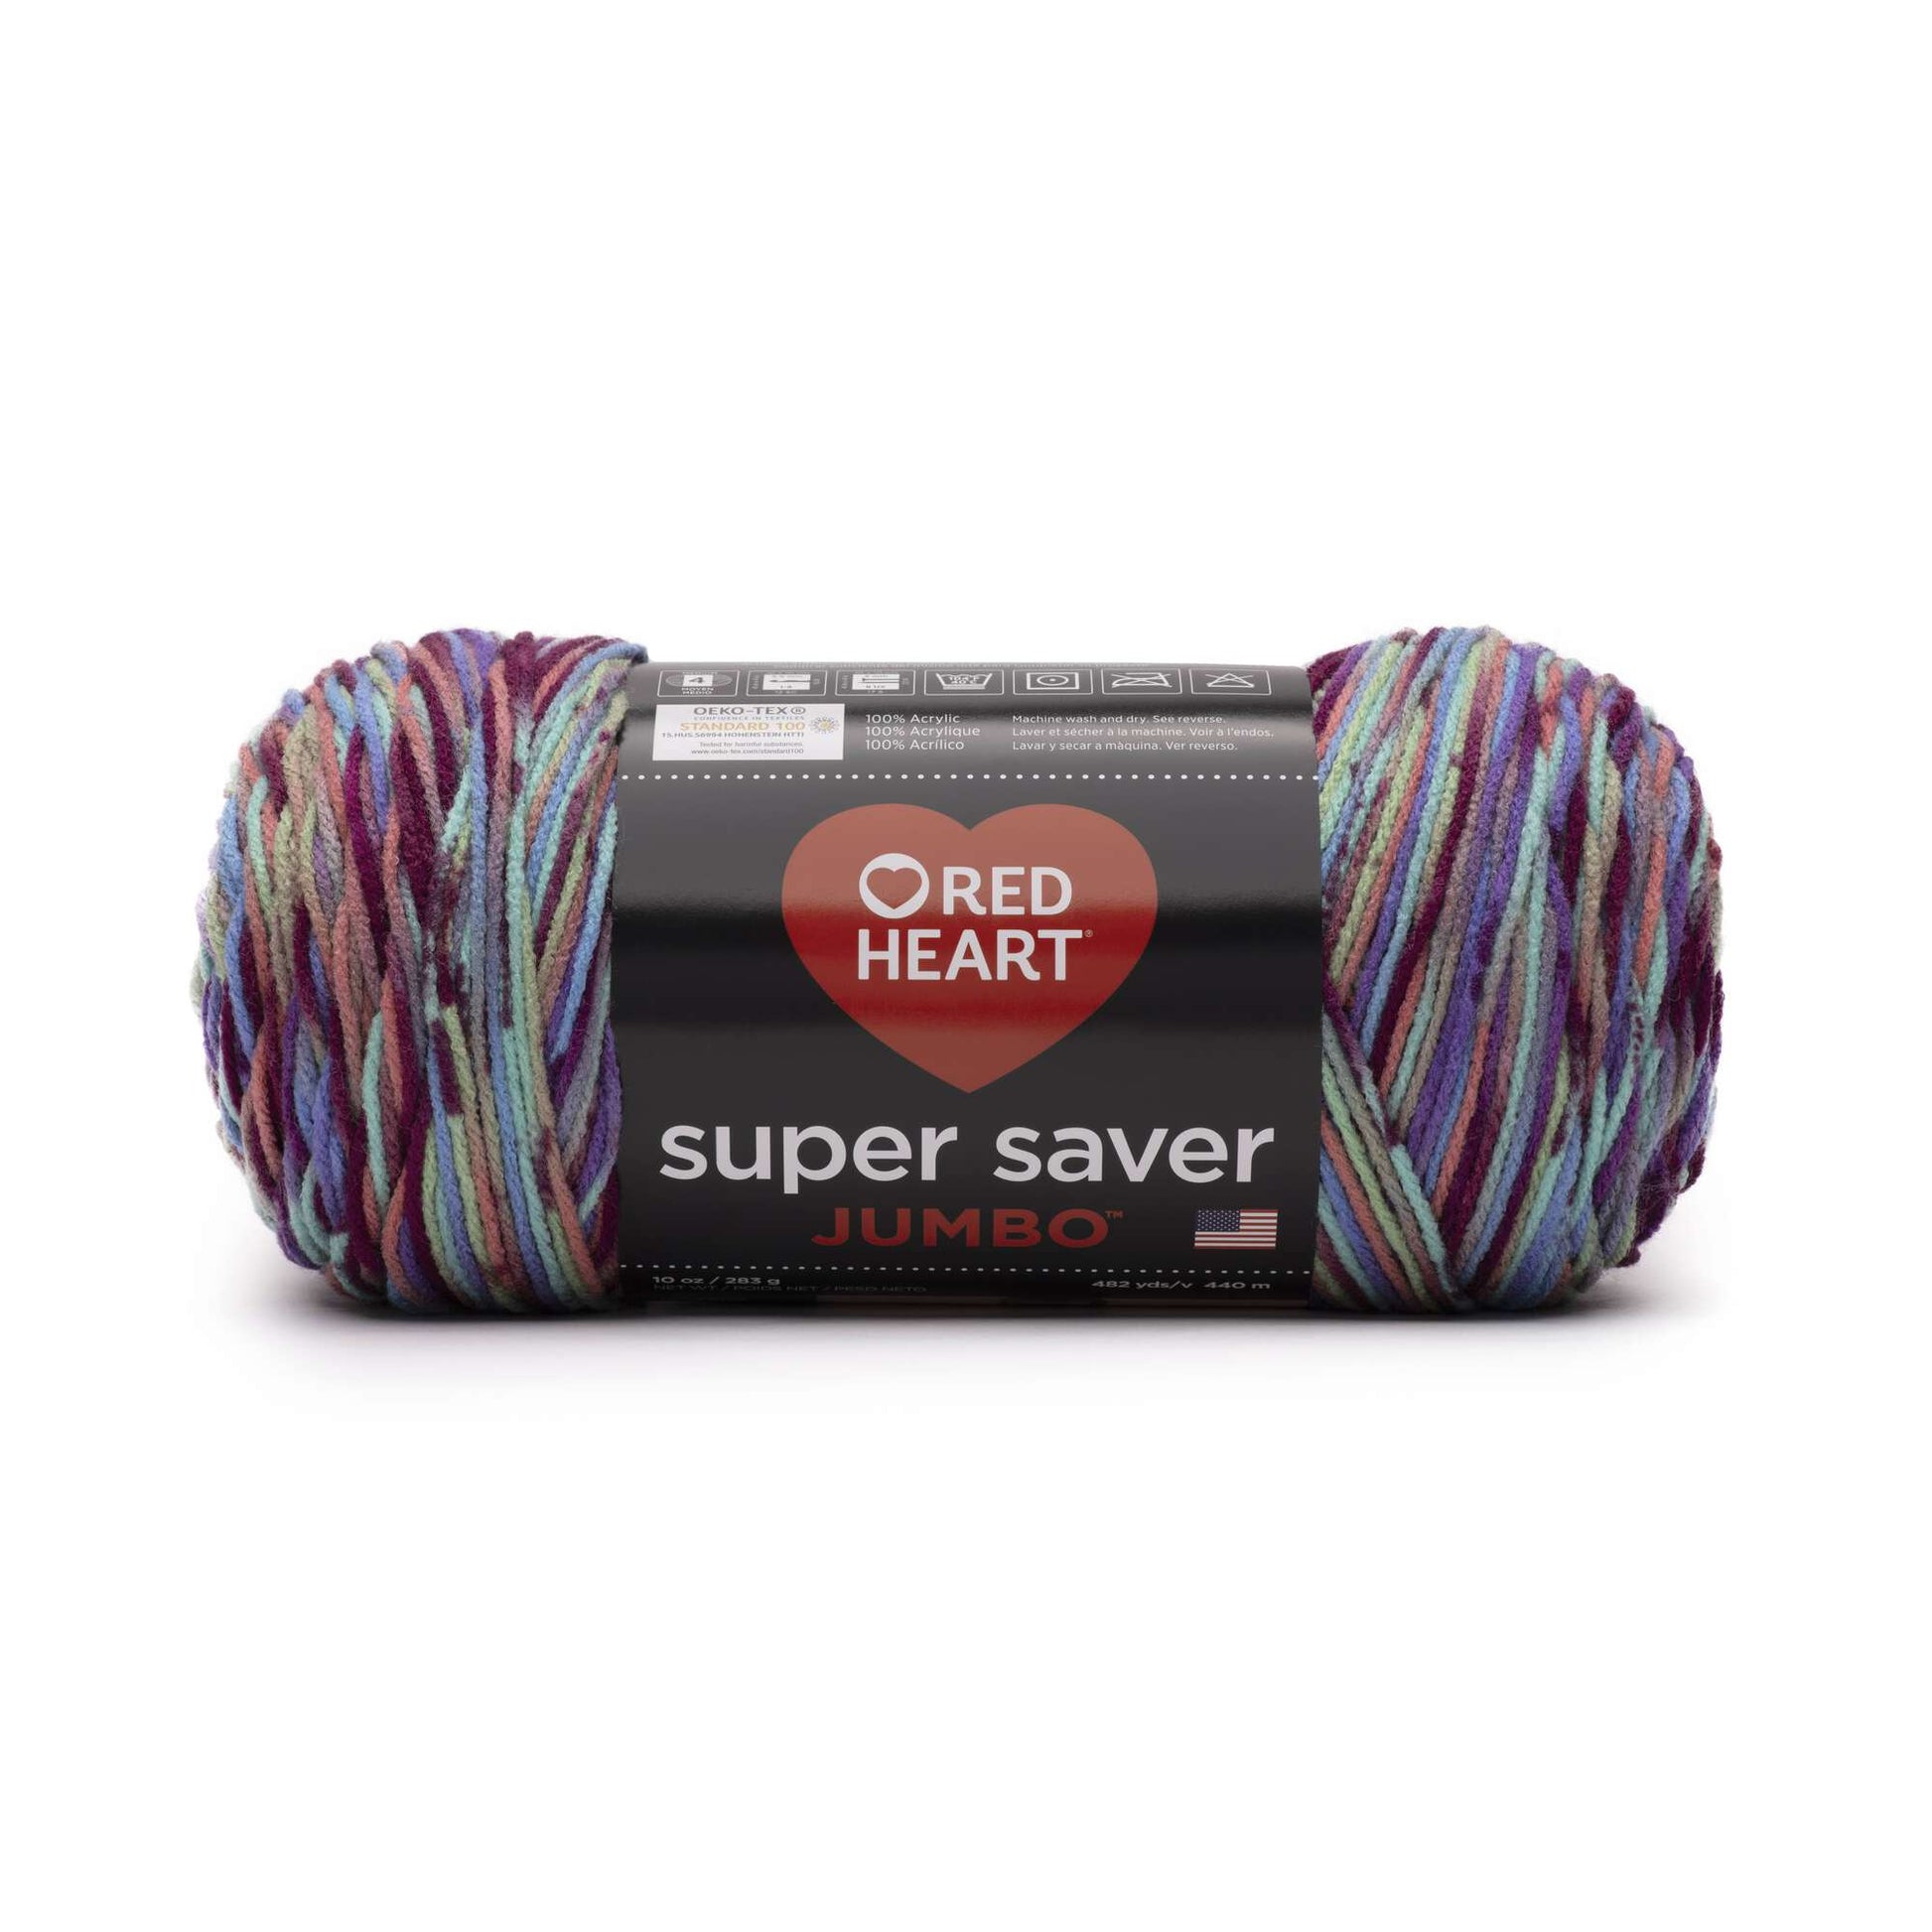 Red Heart Super Saver Jumbo Yarn Starburst Print